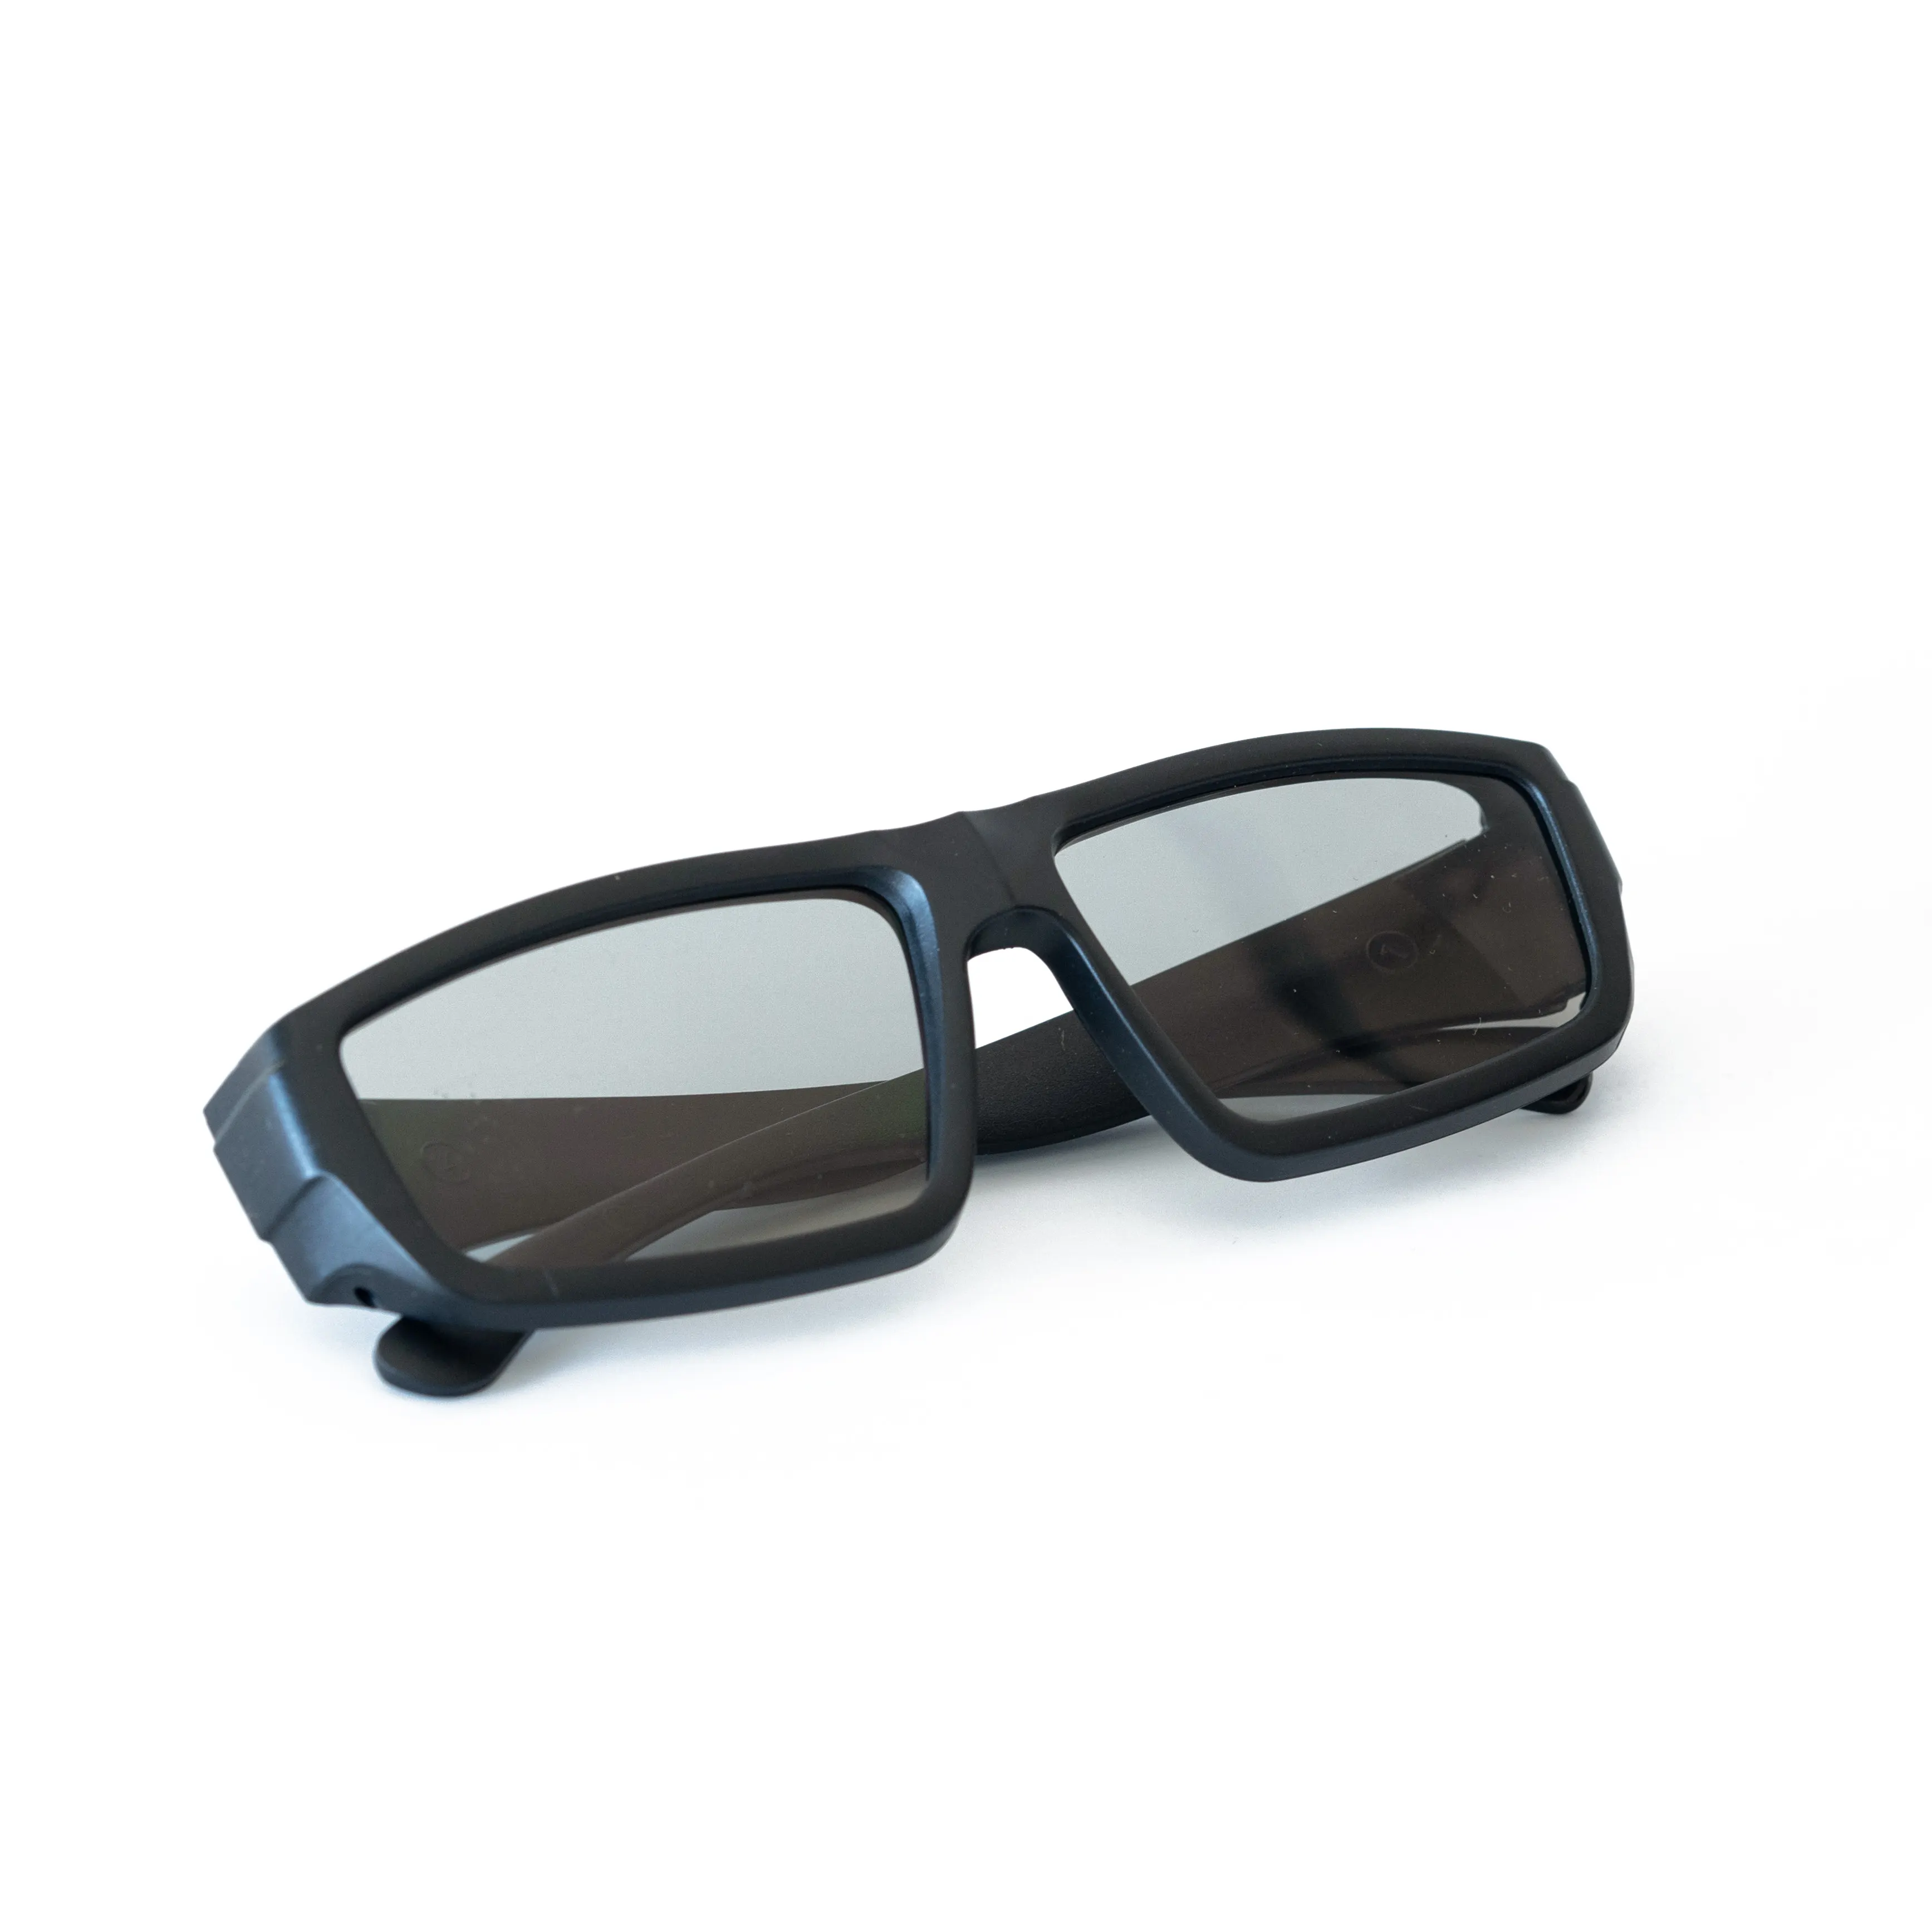 Недорогие универсальные 3D очки в черной оправе, дешевые 3D очки для проектора, кино